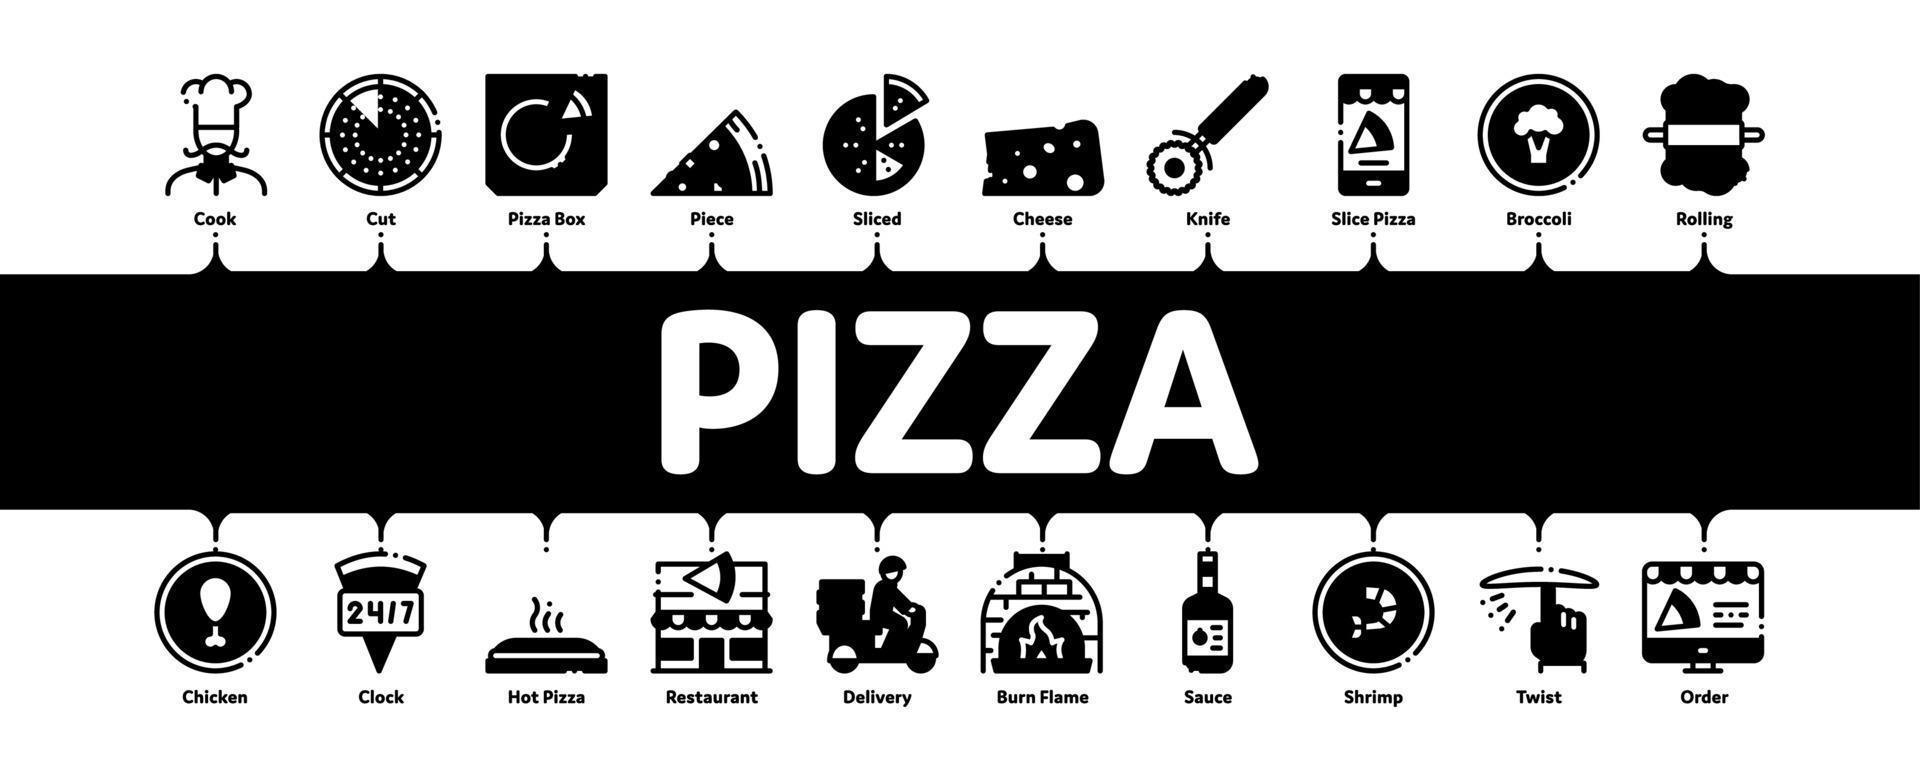 Pizza leckeres Essen minimaler Infografik-Banner-Vektor vektor